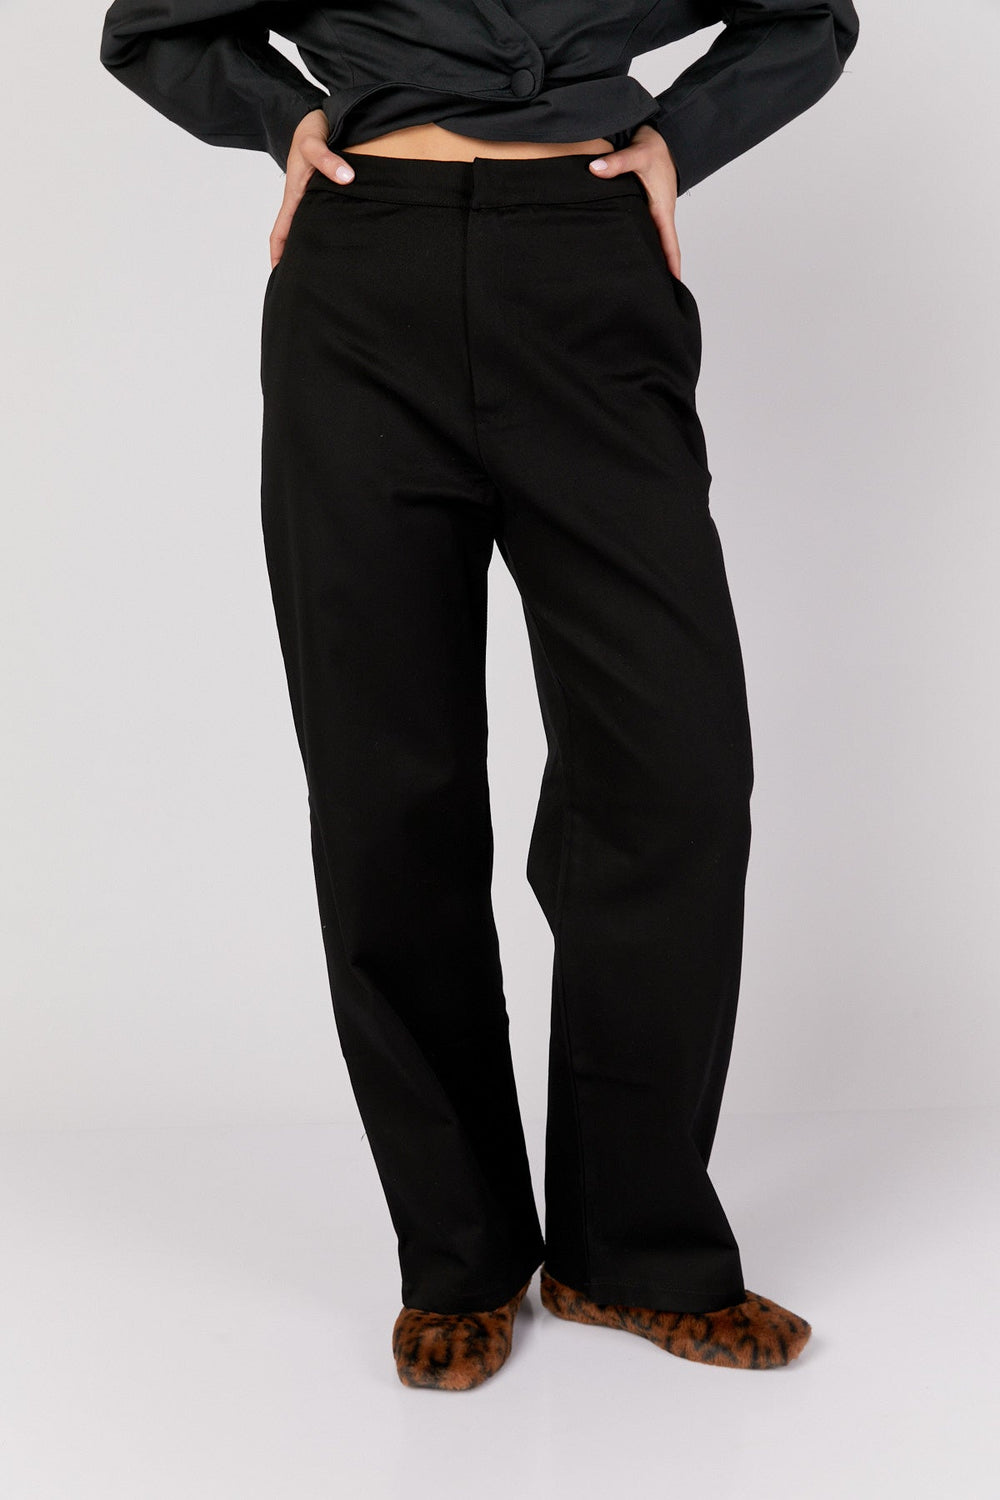 מכנסי אסינה בצבע שחור - Moi Collection